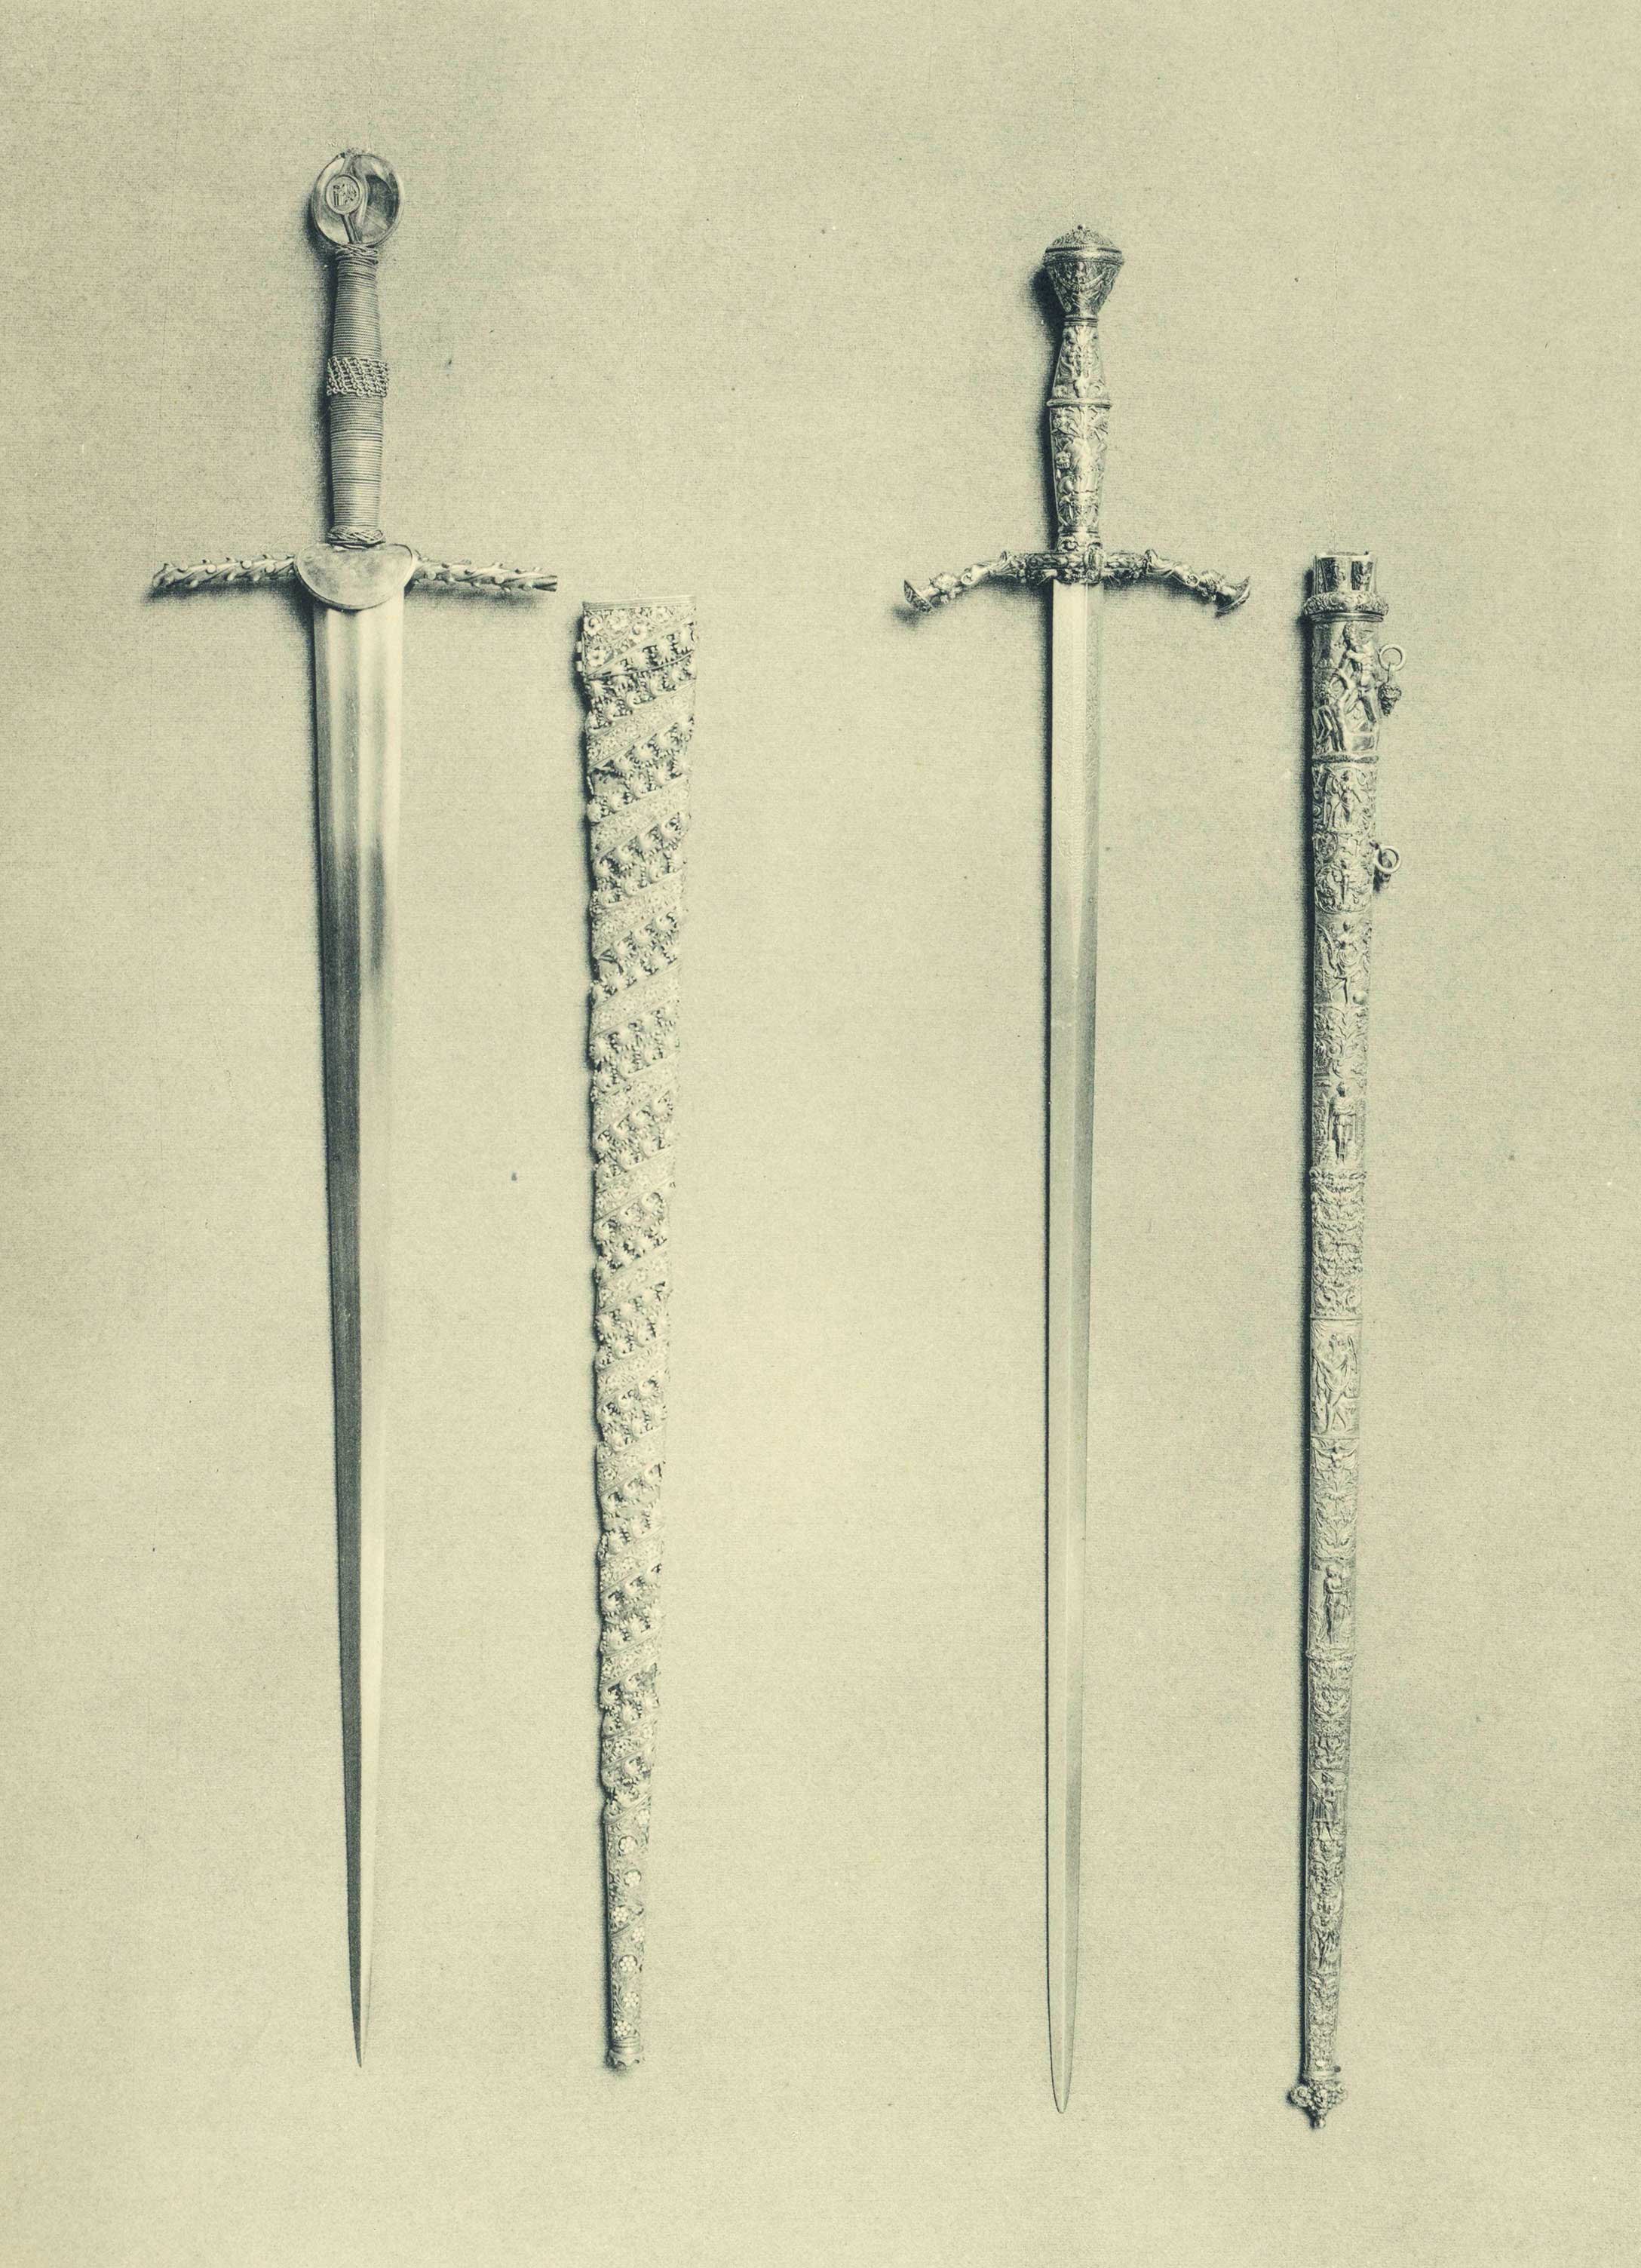 Kurfiřtské meče – znaky postavení saského vévody mezi voliteli císaře, které vstoupily do reprezentační symboliky saských vládců.